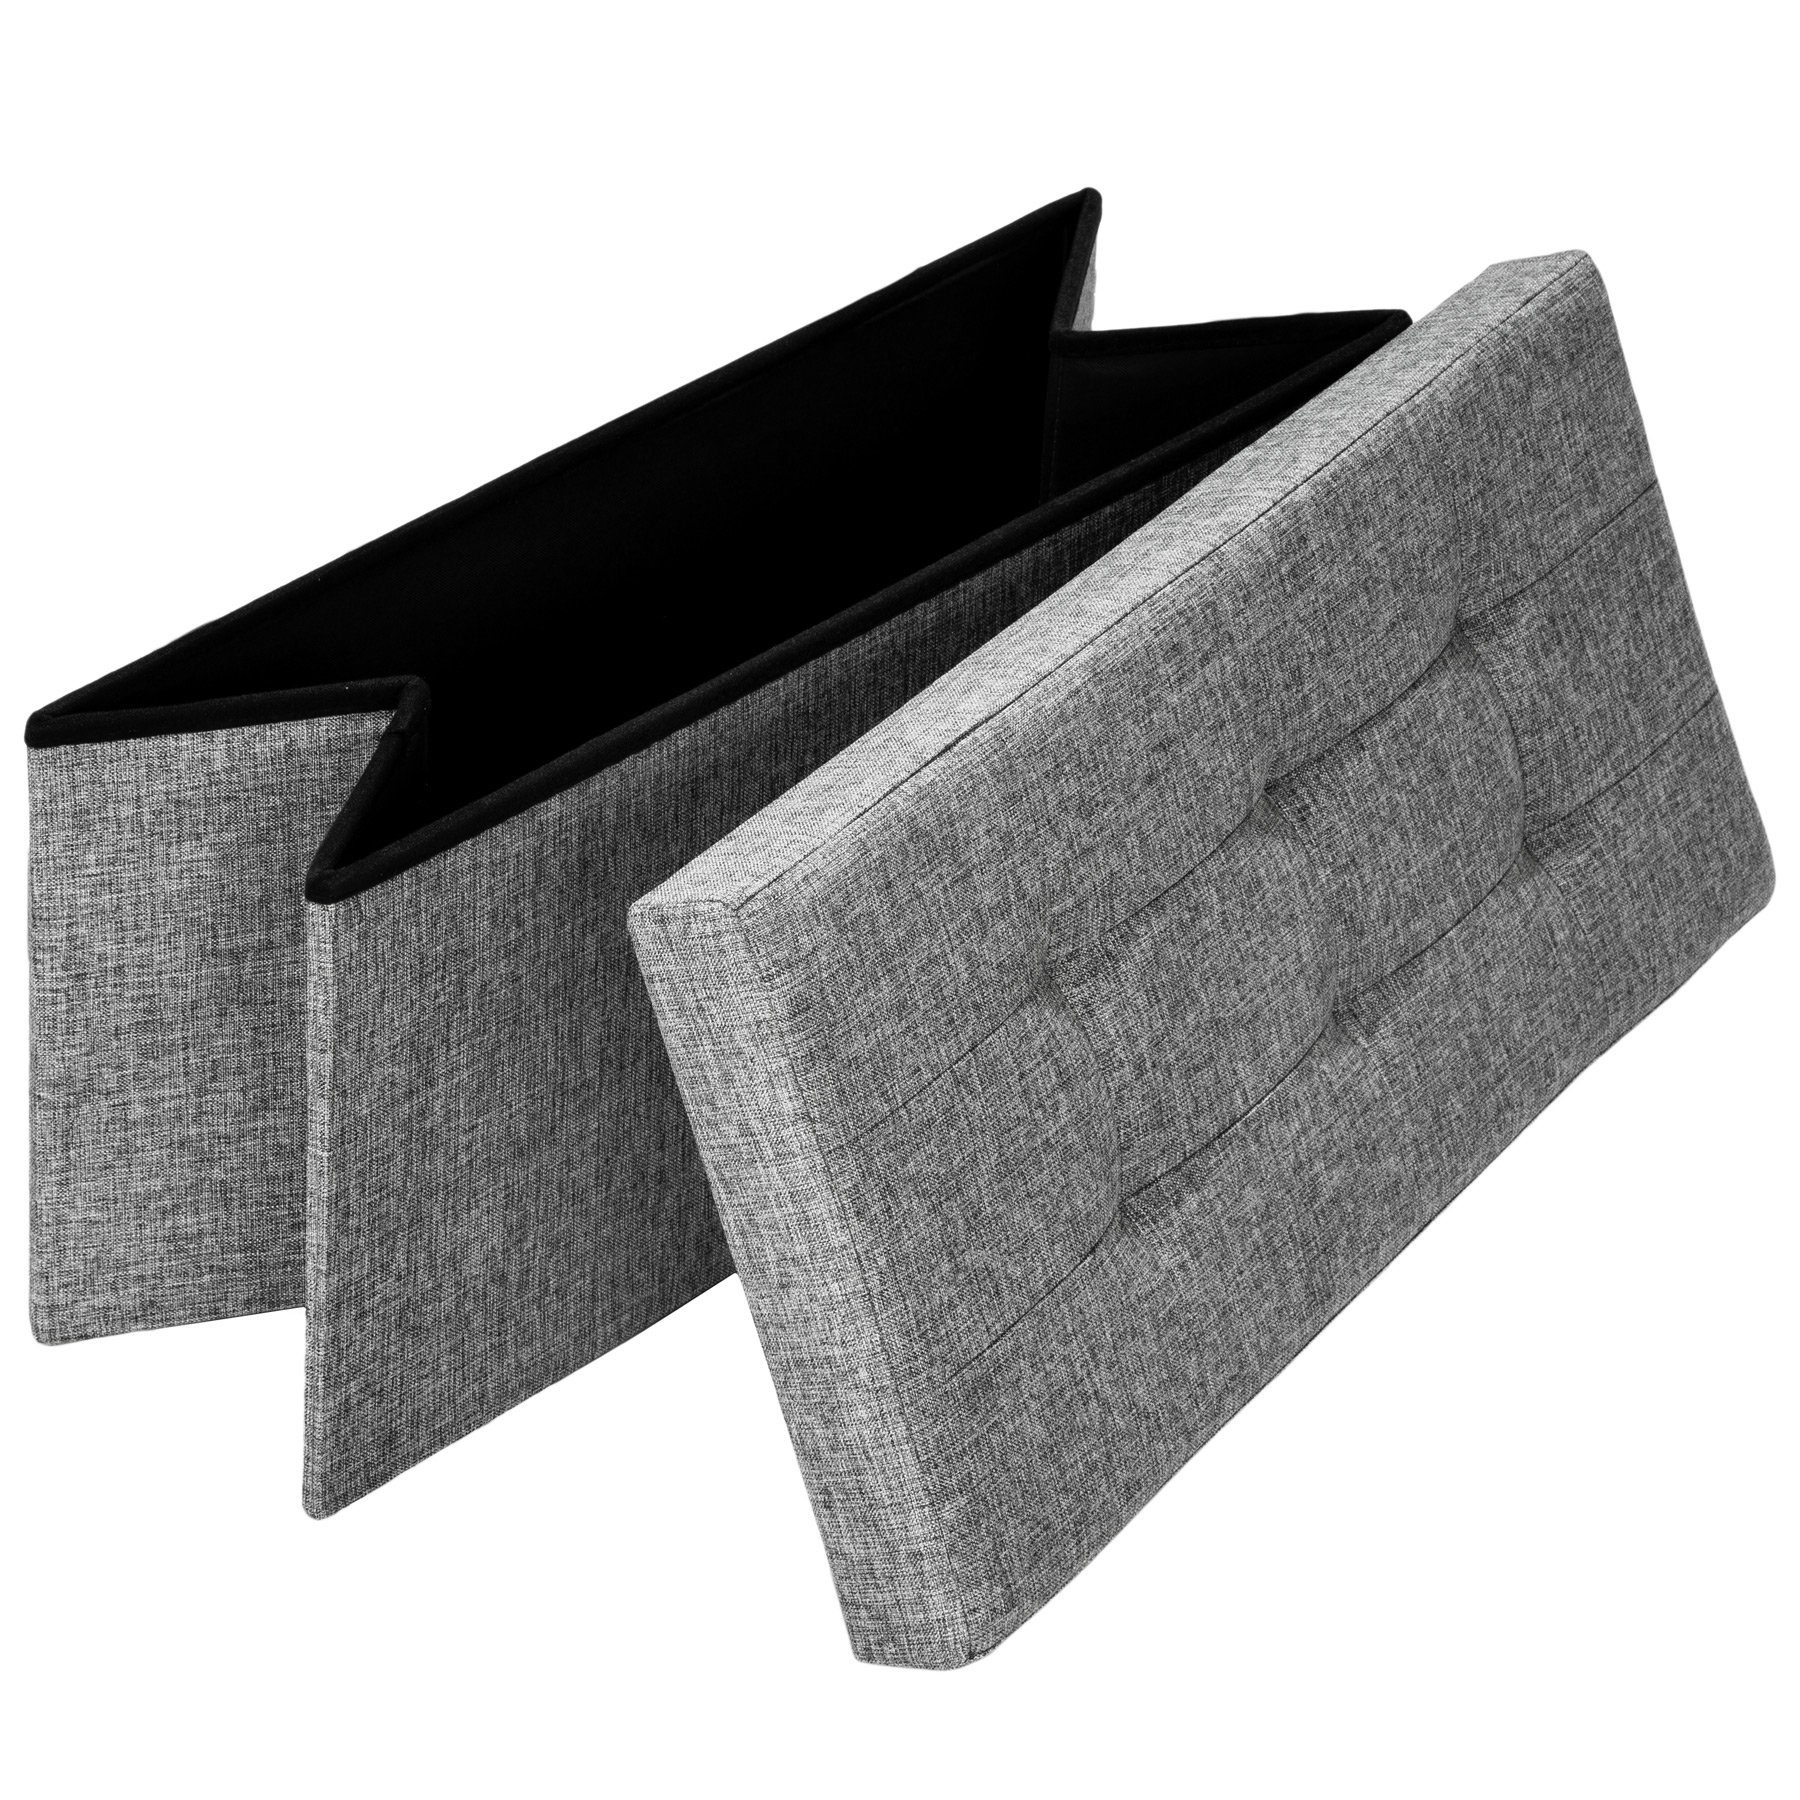 Stauraum Sitzhocker tectake hellgrau aus Polyester faltbar mit Sitzhocker (1), Faltbarer